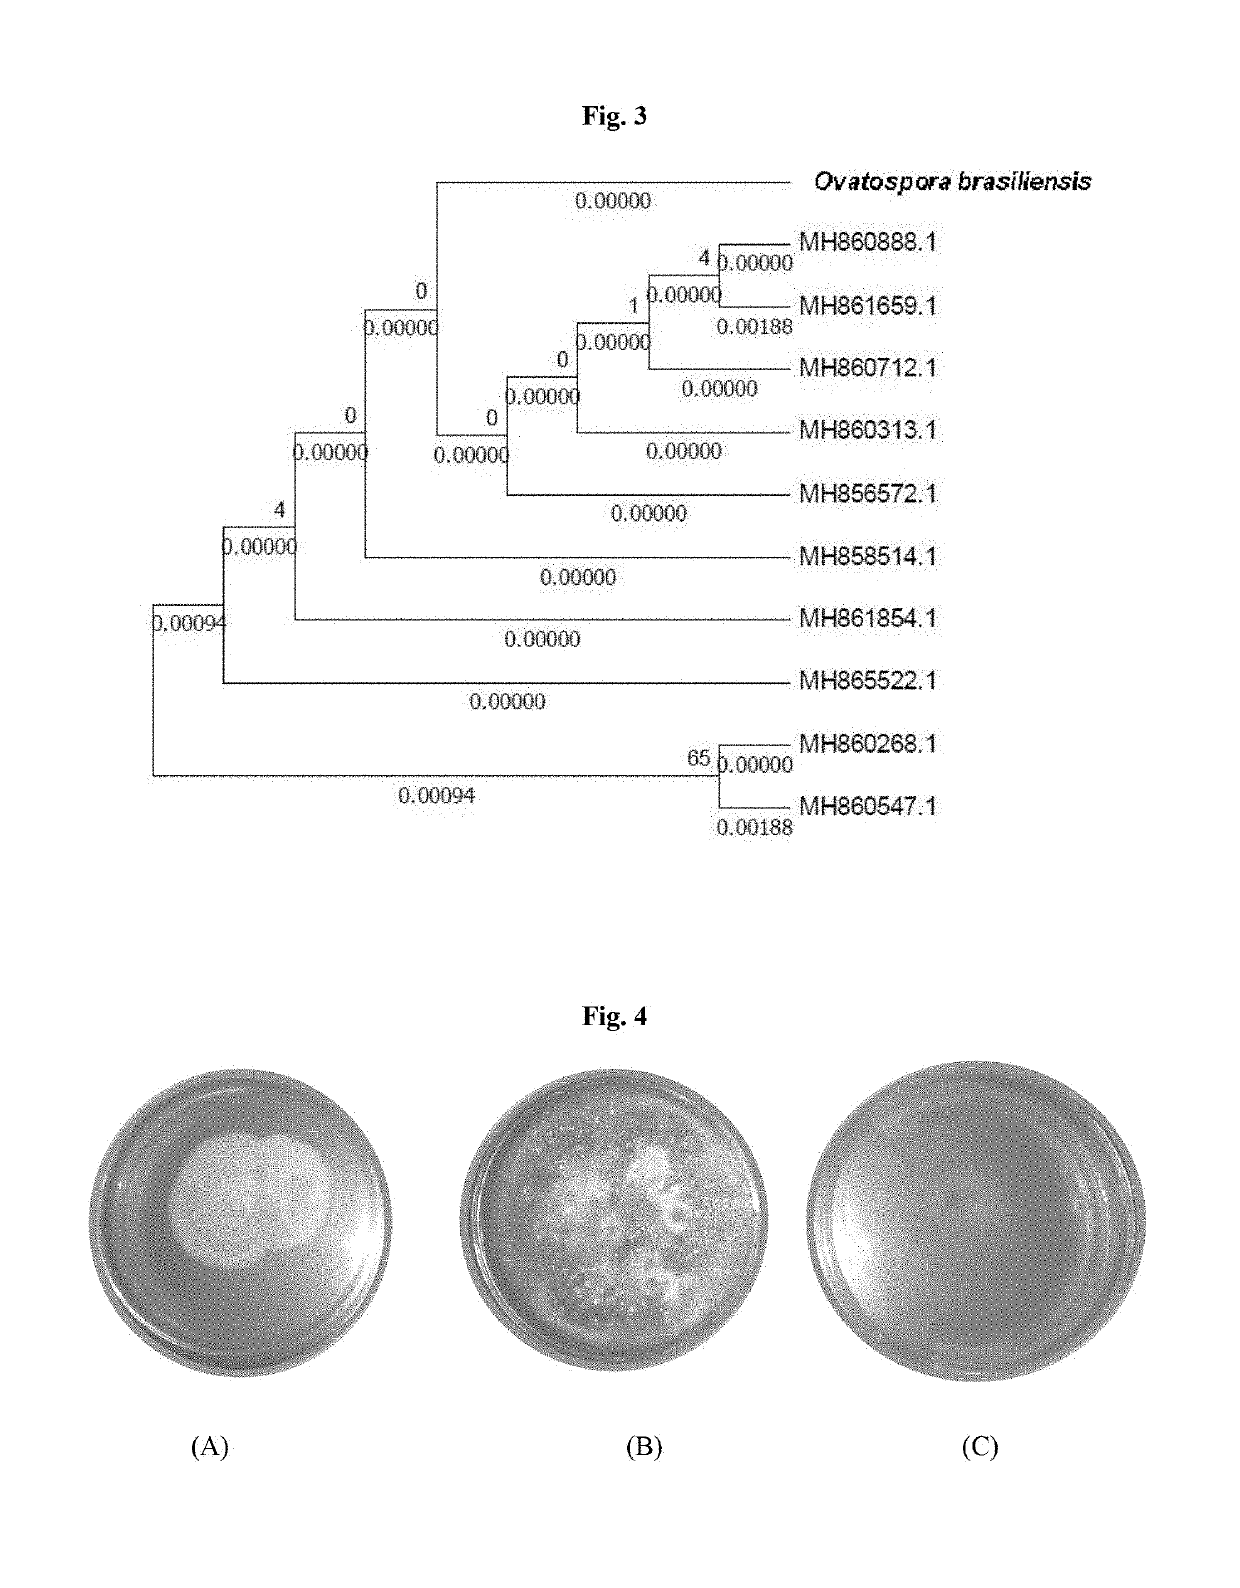 Microbial bioconversion of curcuminoids to calebin-a